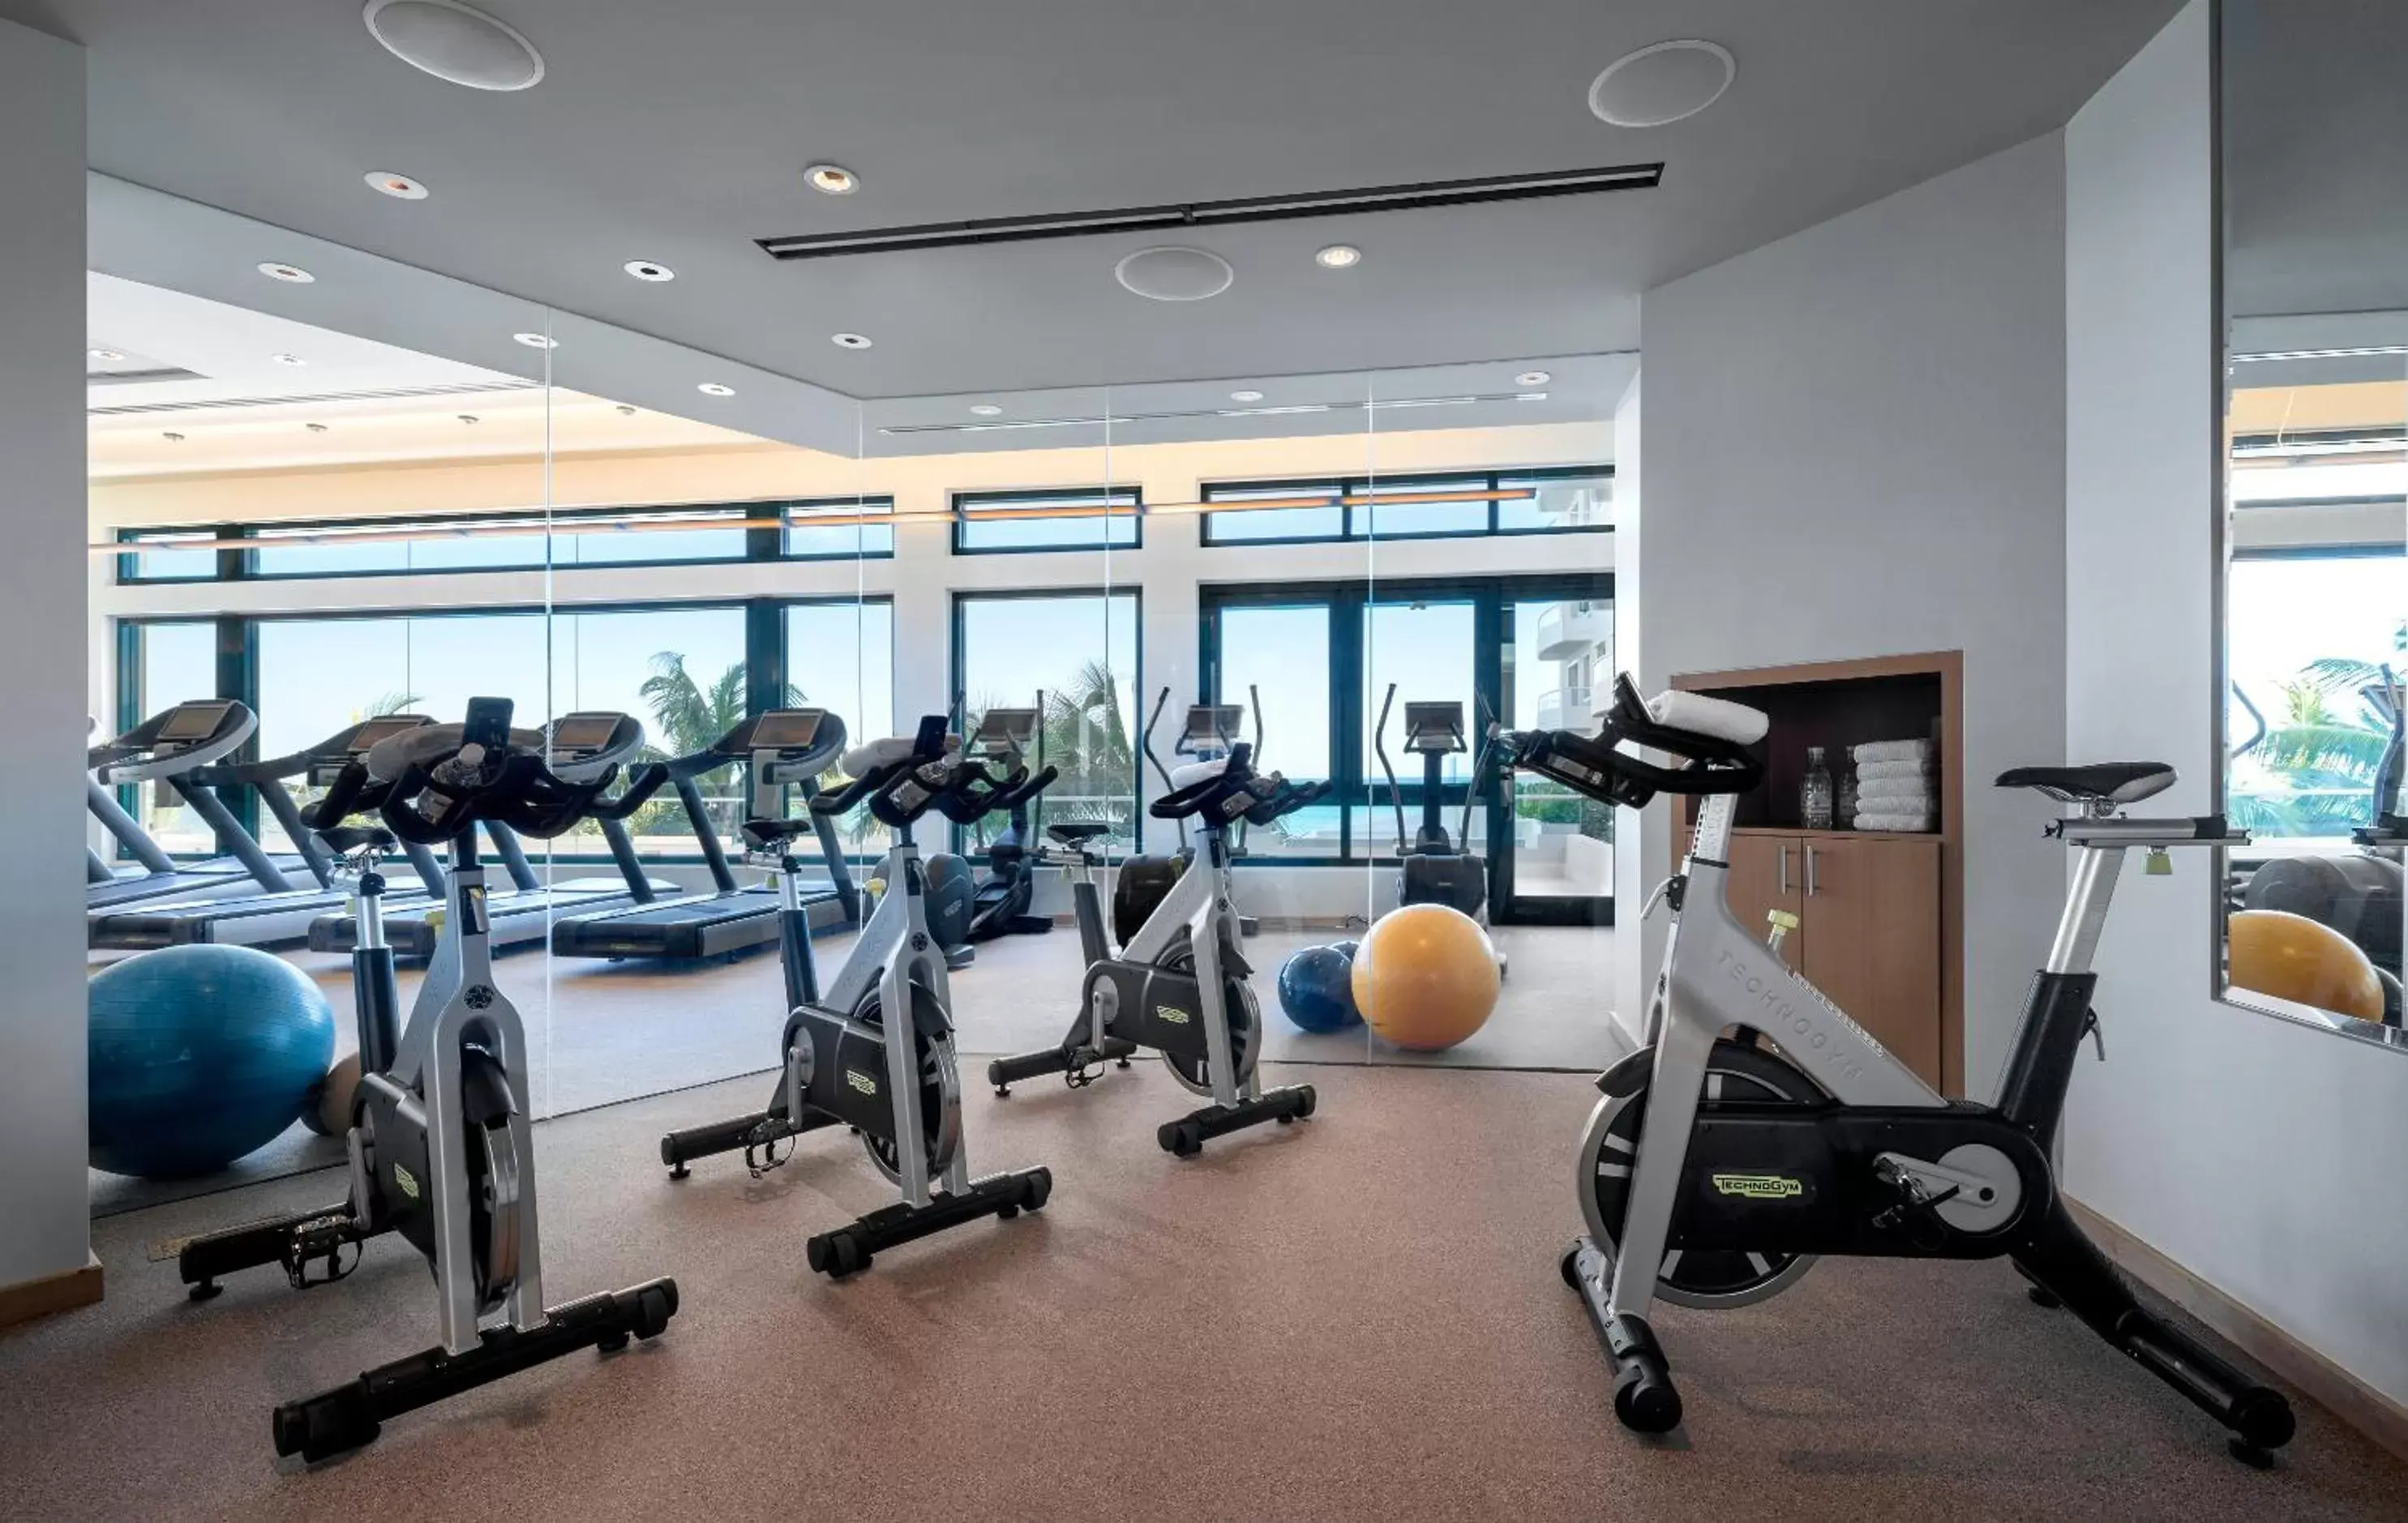 Fitness centre/facilities, Fitness Center/Facilities in Condado Vanderbilt Hotel